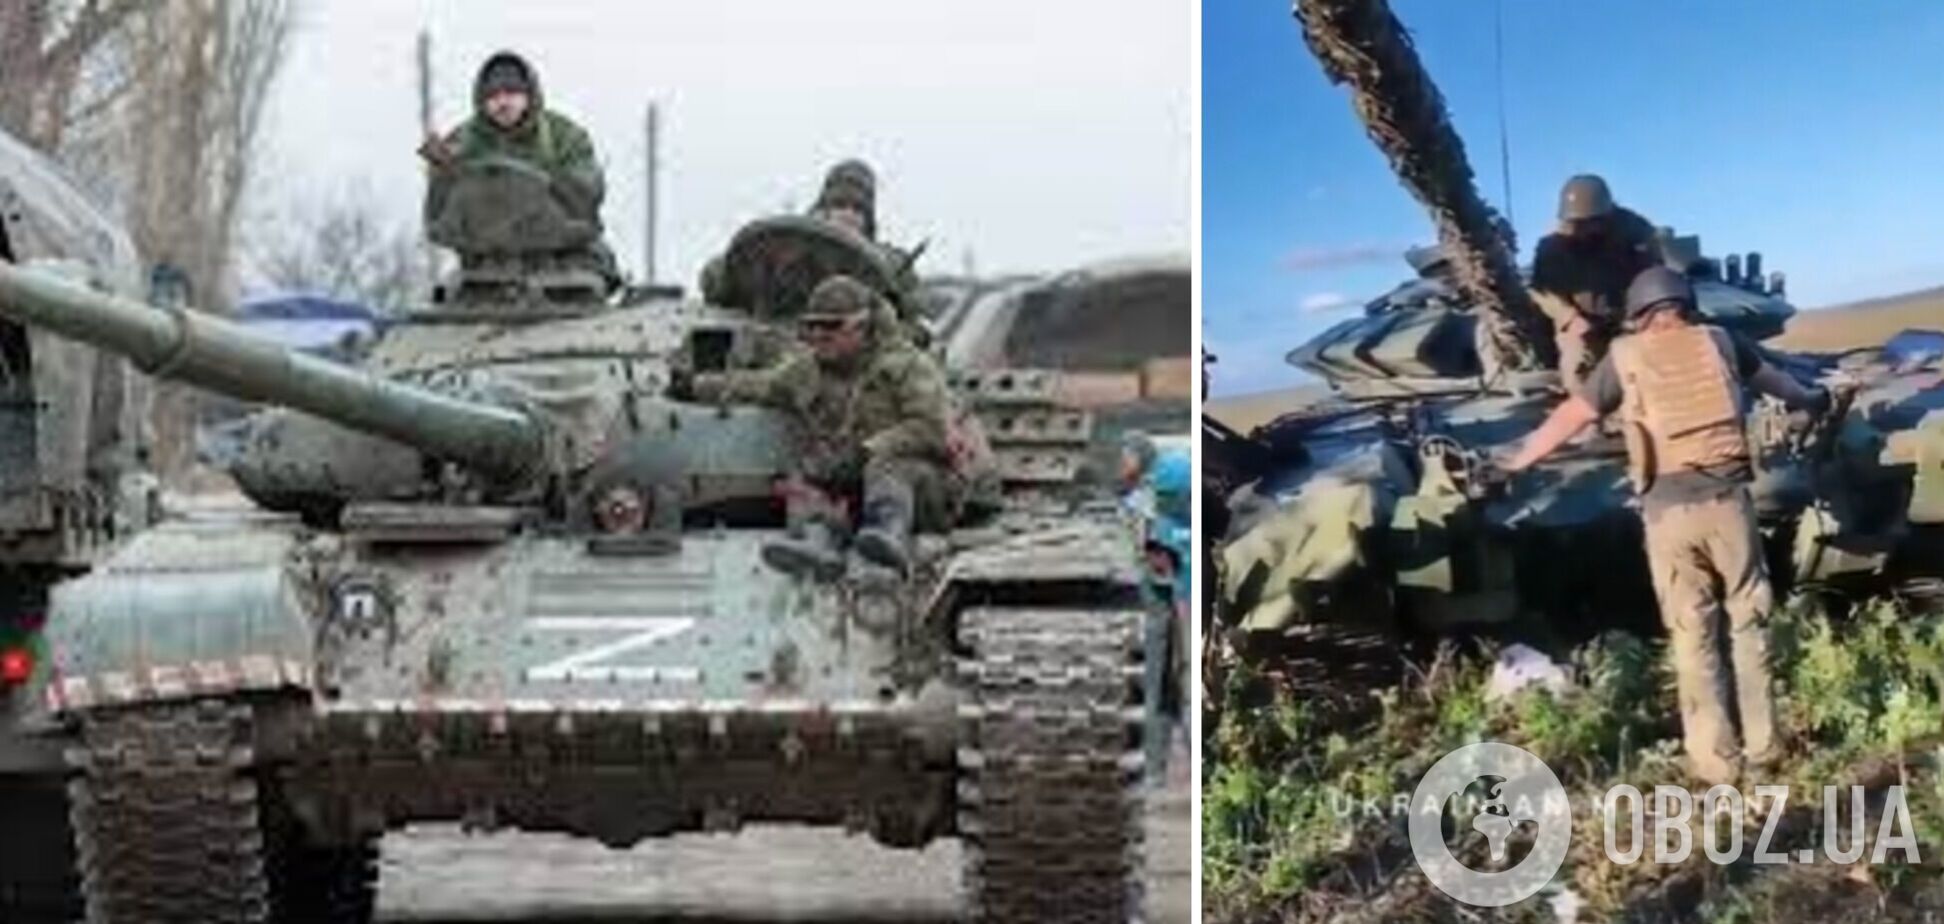 Уже служит ВСУ: украинские защитники захватили вражеский танк под носом у оккупантов. Видео